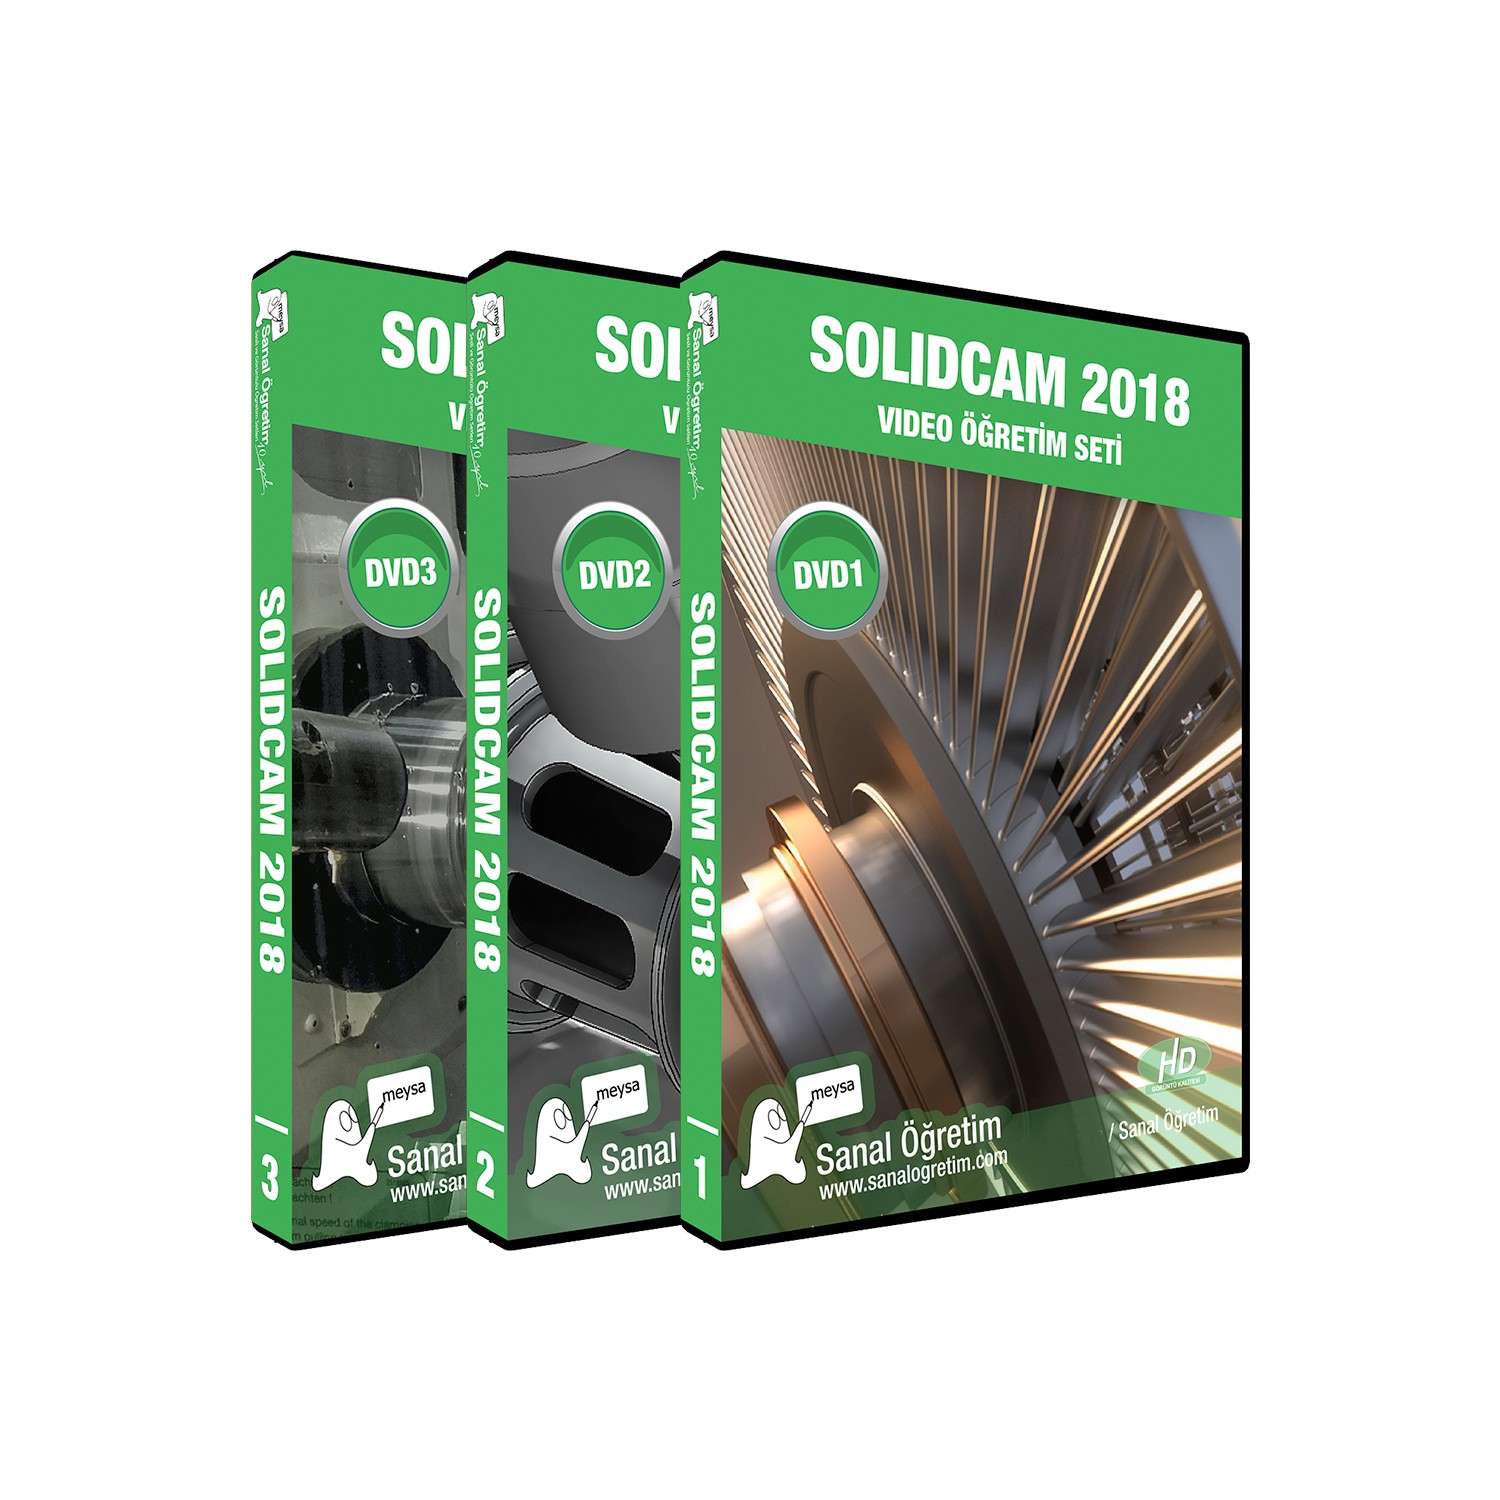 solidcam 2018 price